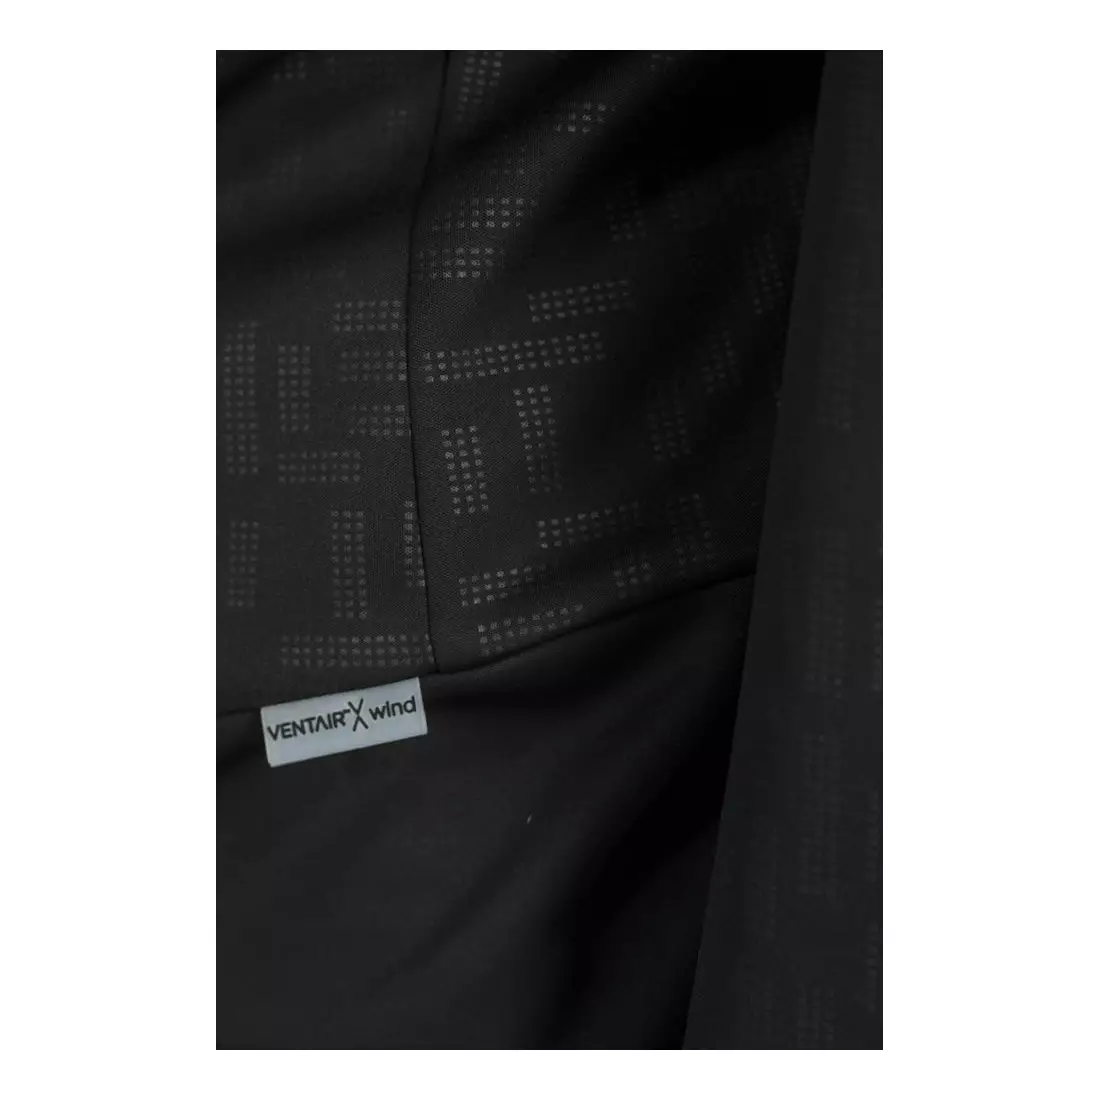 Jachetă de ciclism softshell pentru femei CRAFT RIME 1905444-999000, neagră